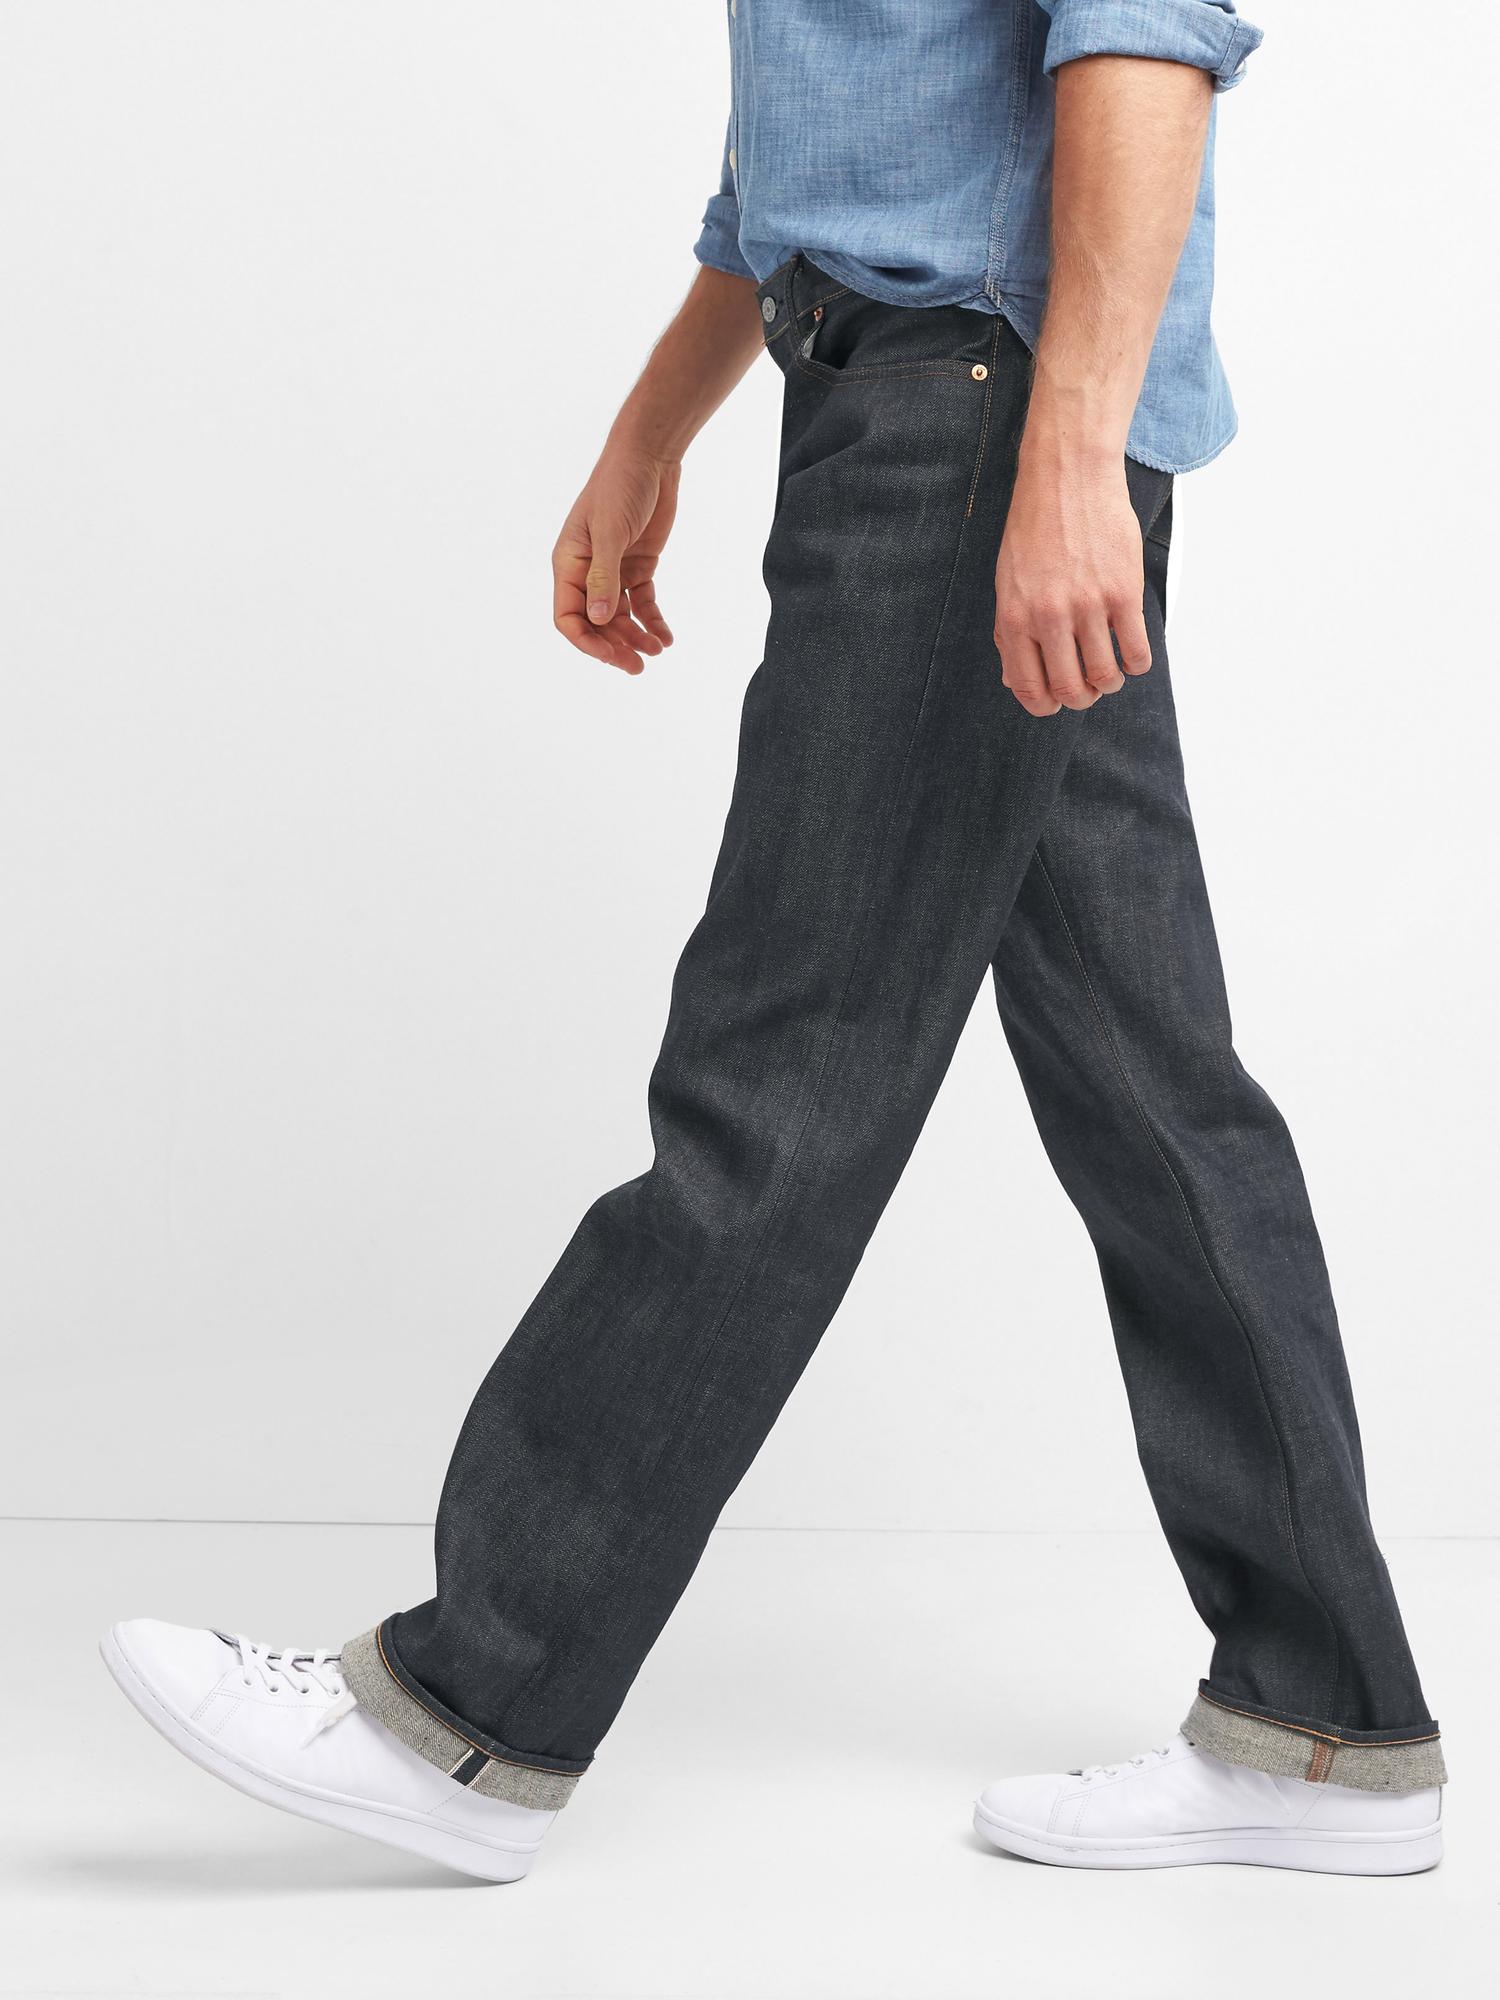 gap 100 cotton jeans